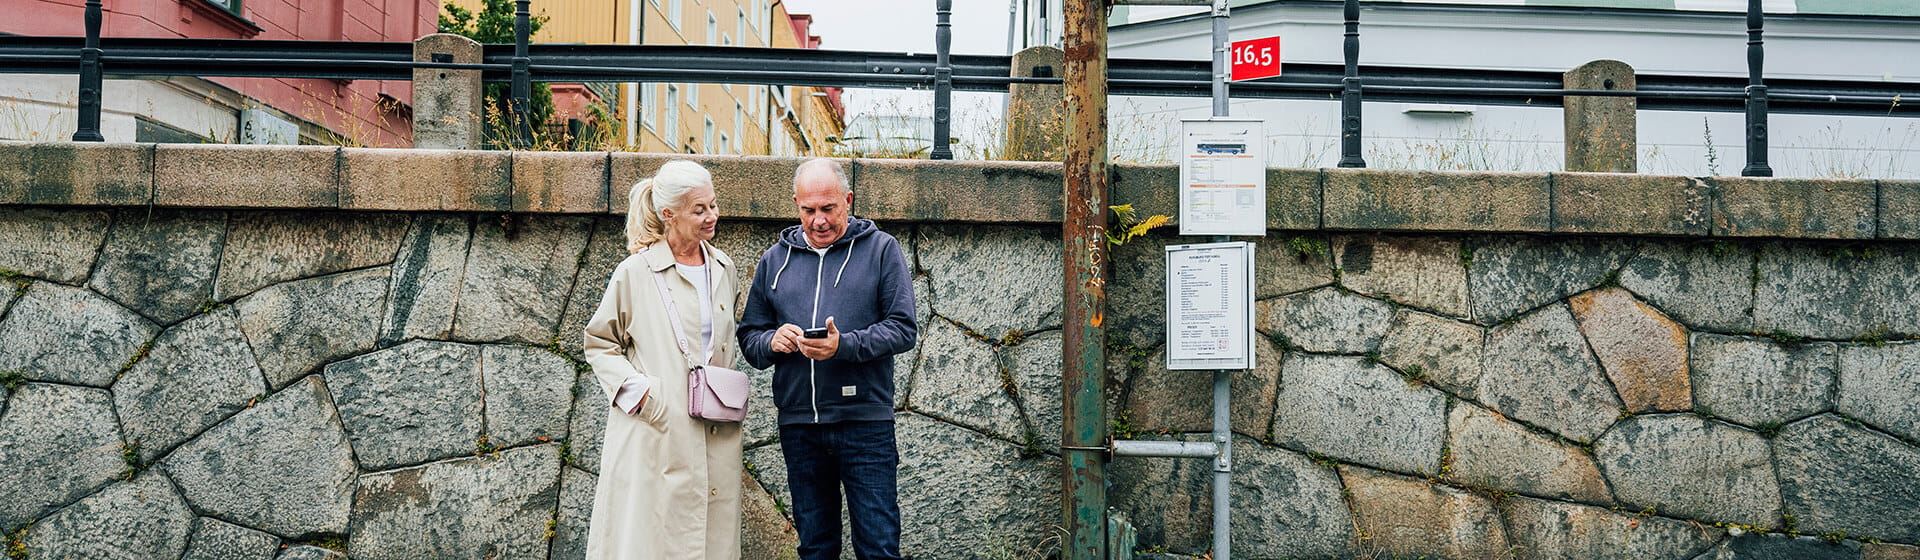 En kvinna och en man står vid en busshållplats. Mannen tittar ner i sin mobiltelefon.